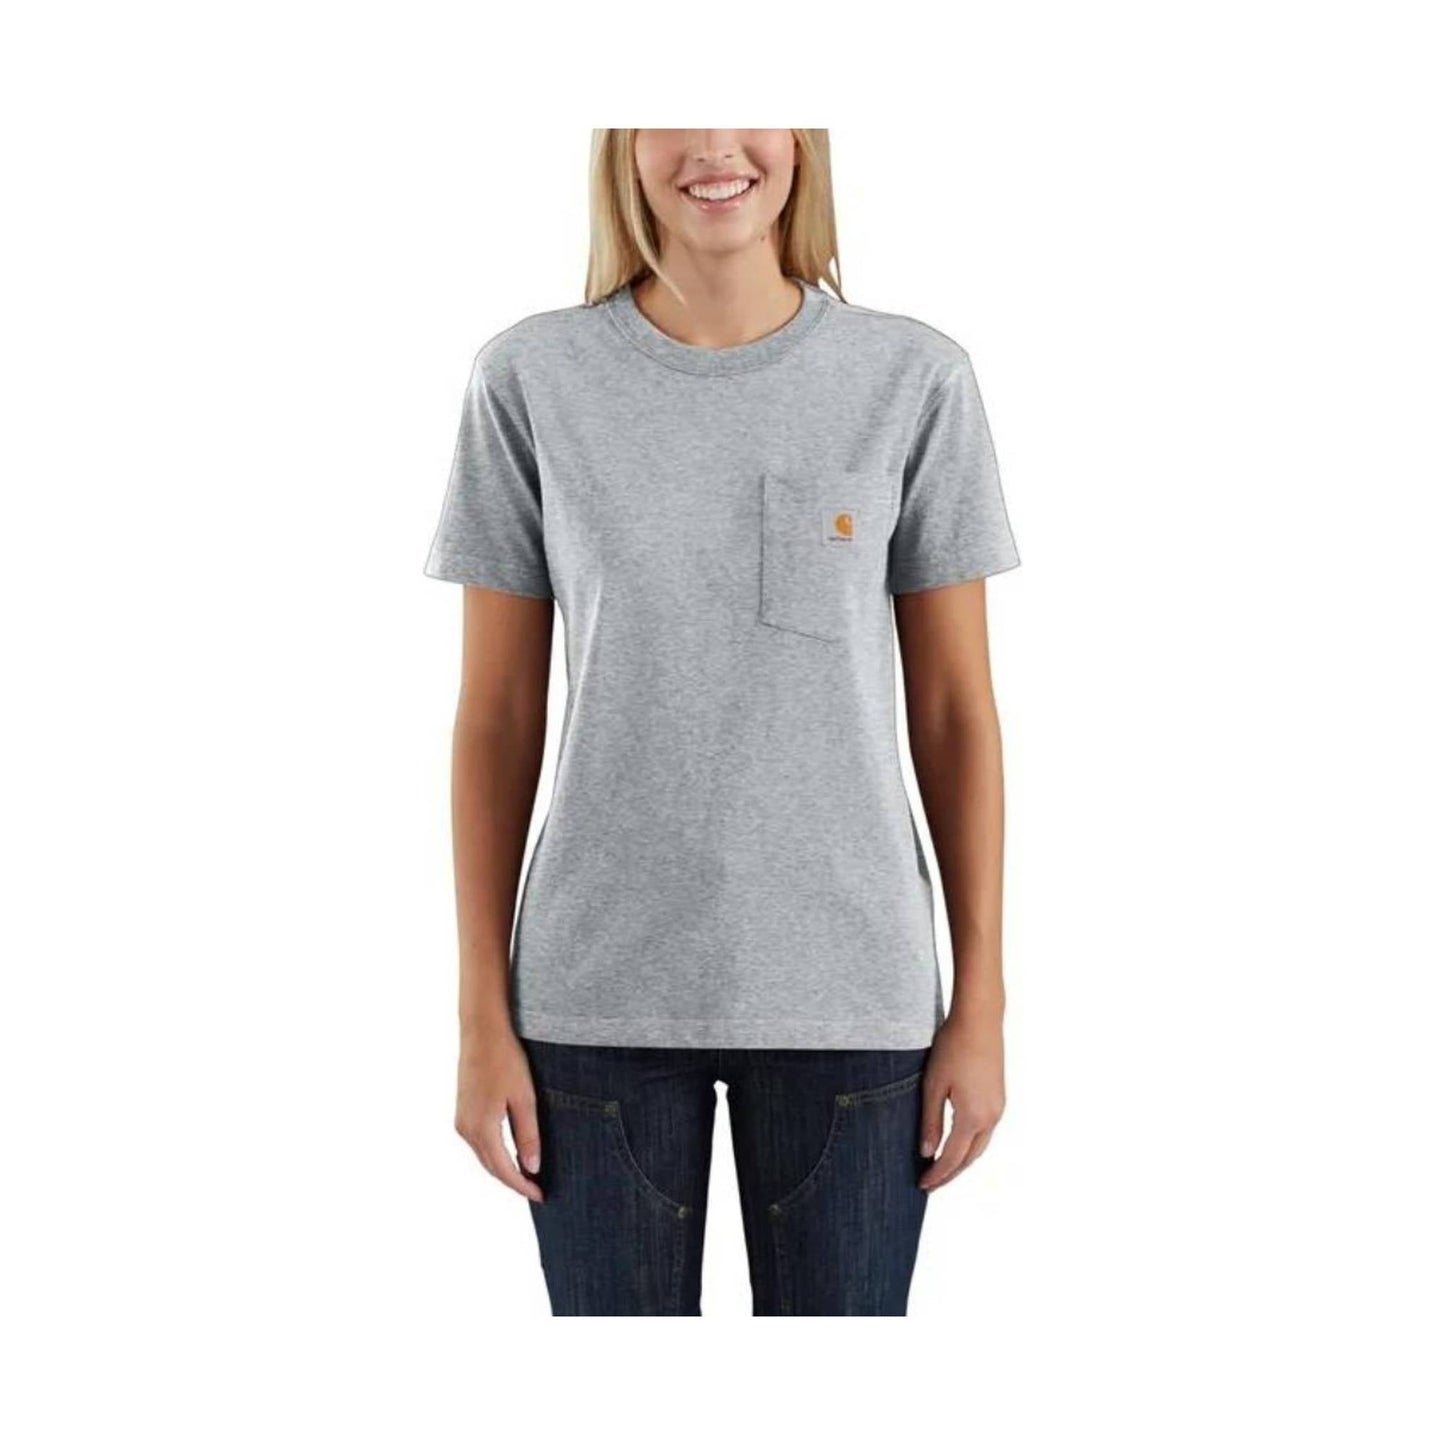 Carhartt Women's Loose Fit Heavyweight Short-Sleeve Pocket T-Shirt - Heather Gray